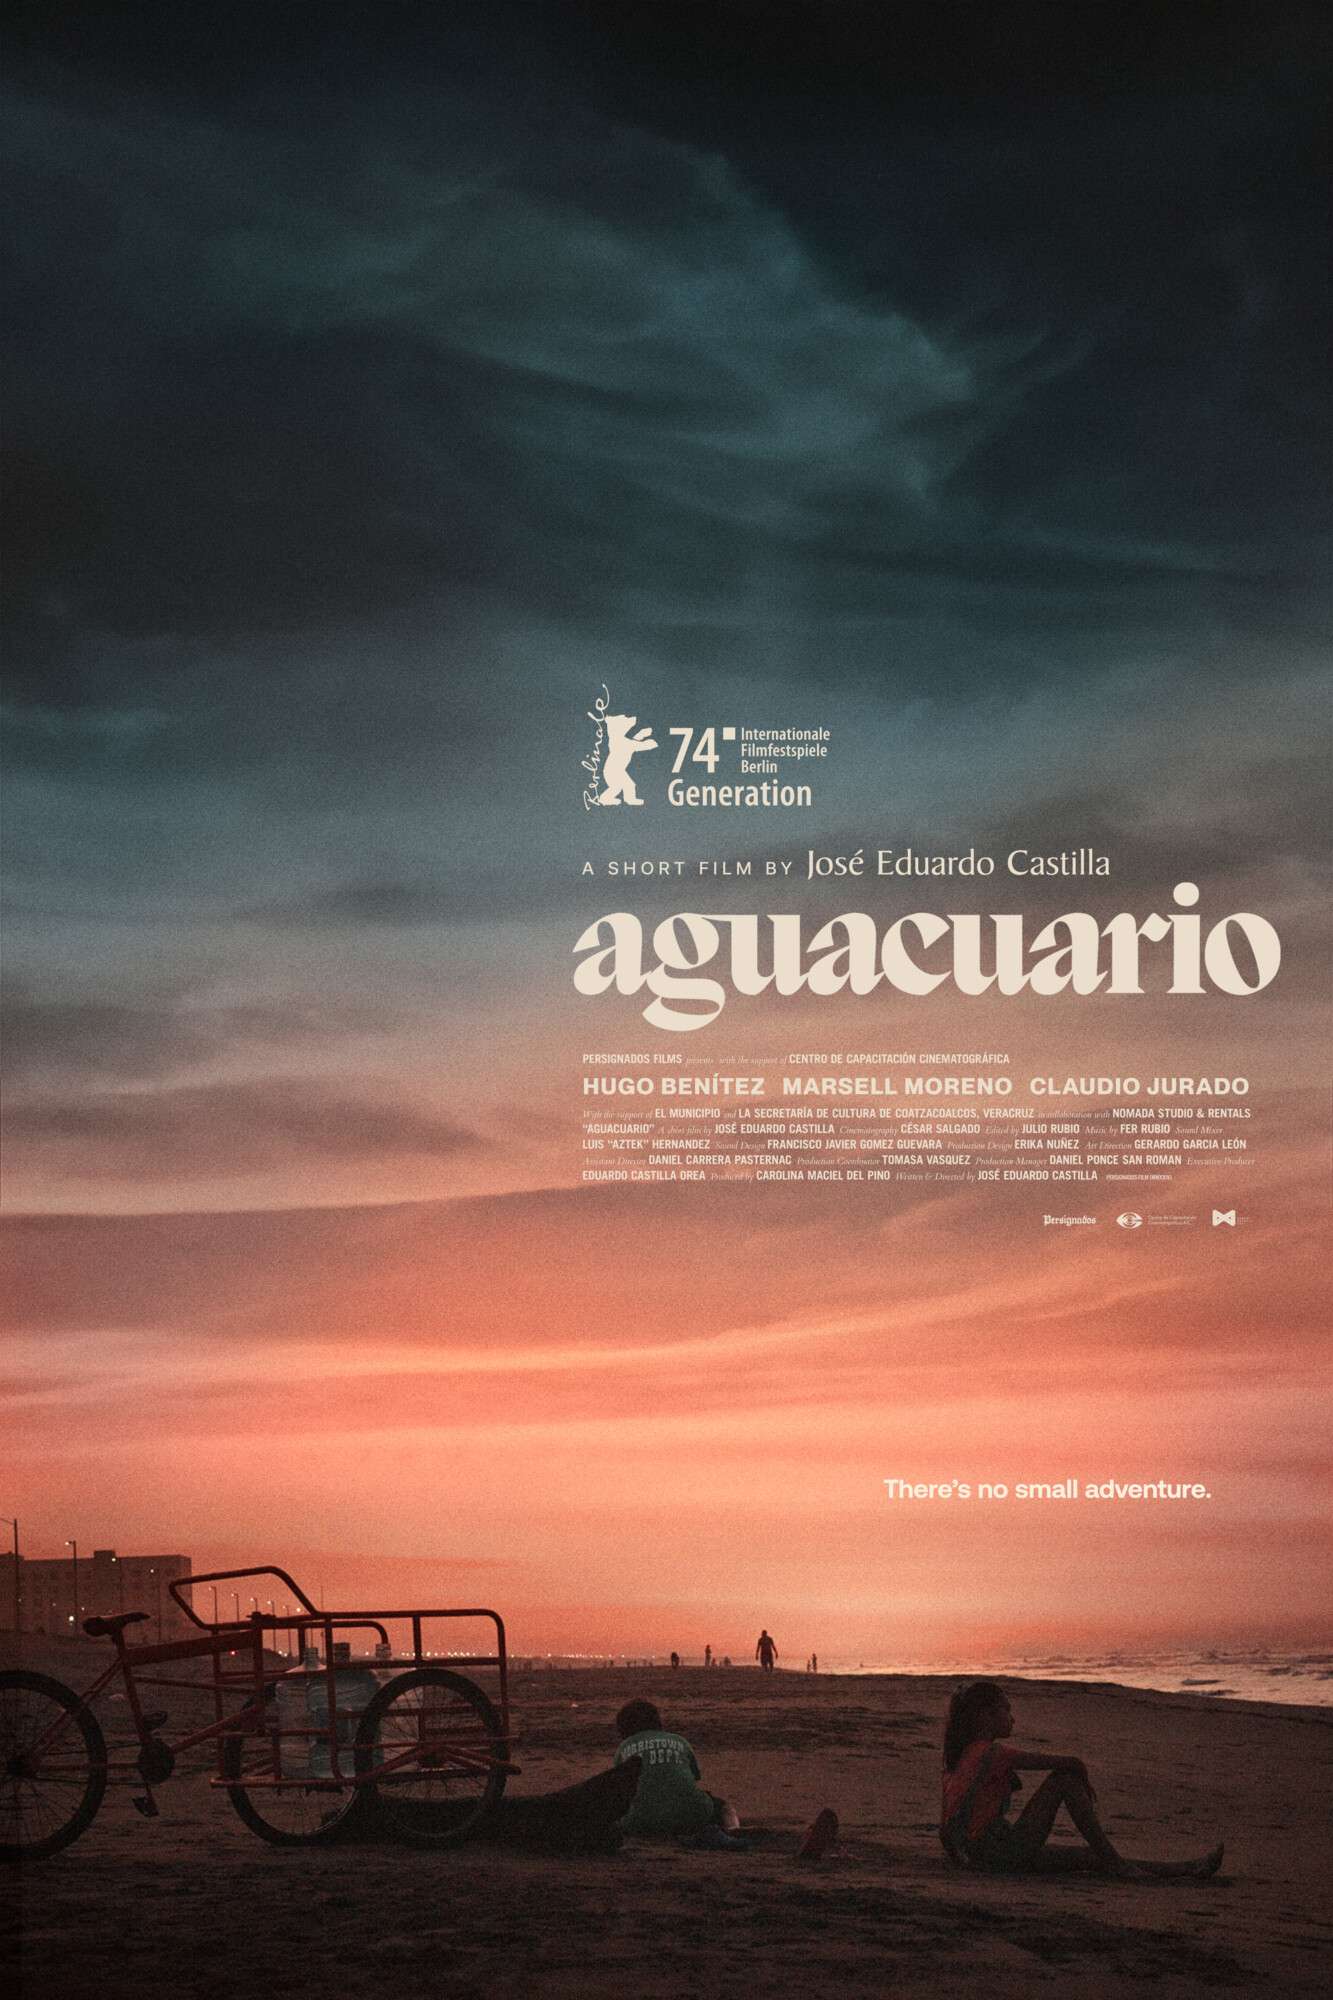 Aguacuario | La Berlinale Official Announcement Poster By Aleks Phoenix